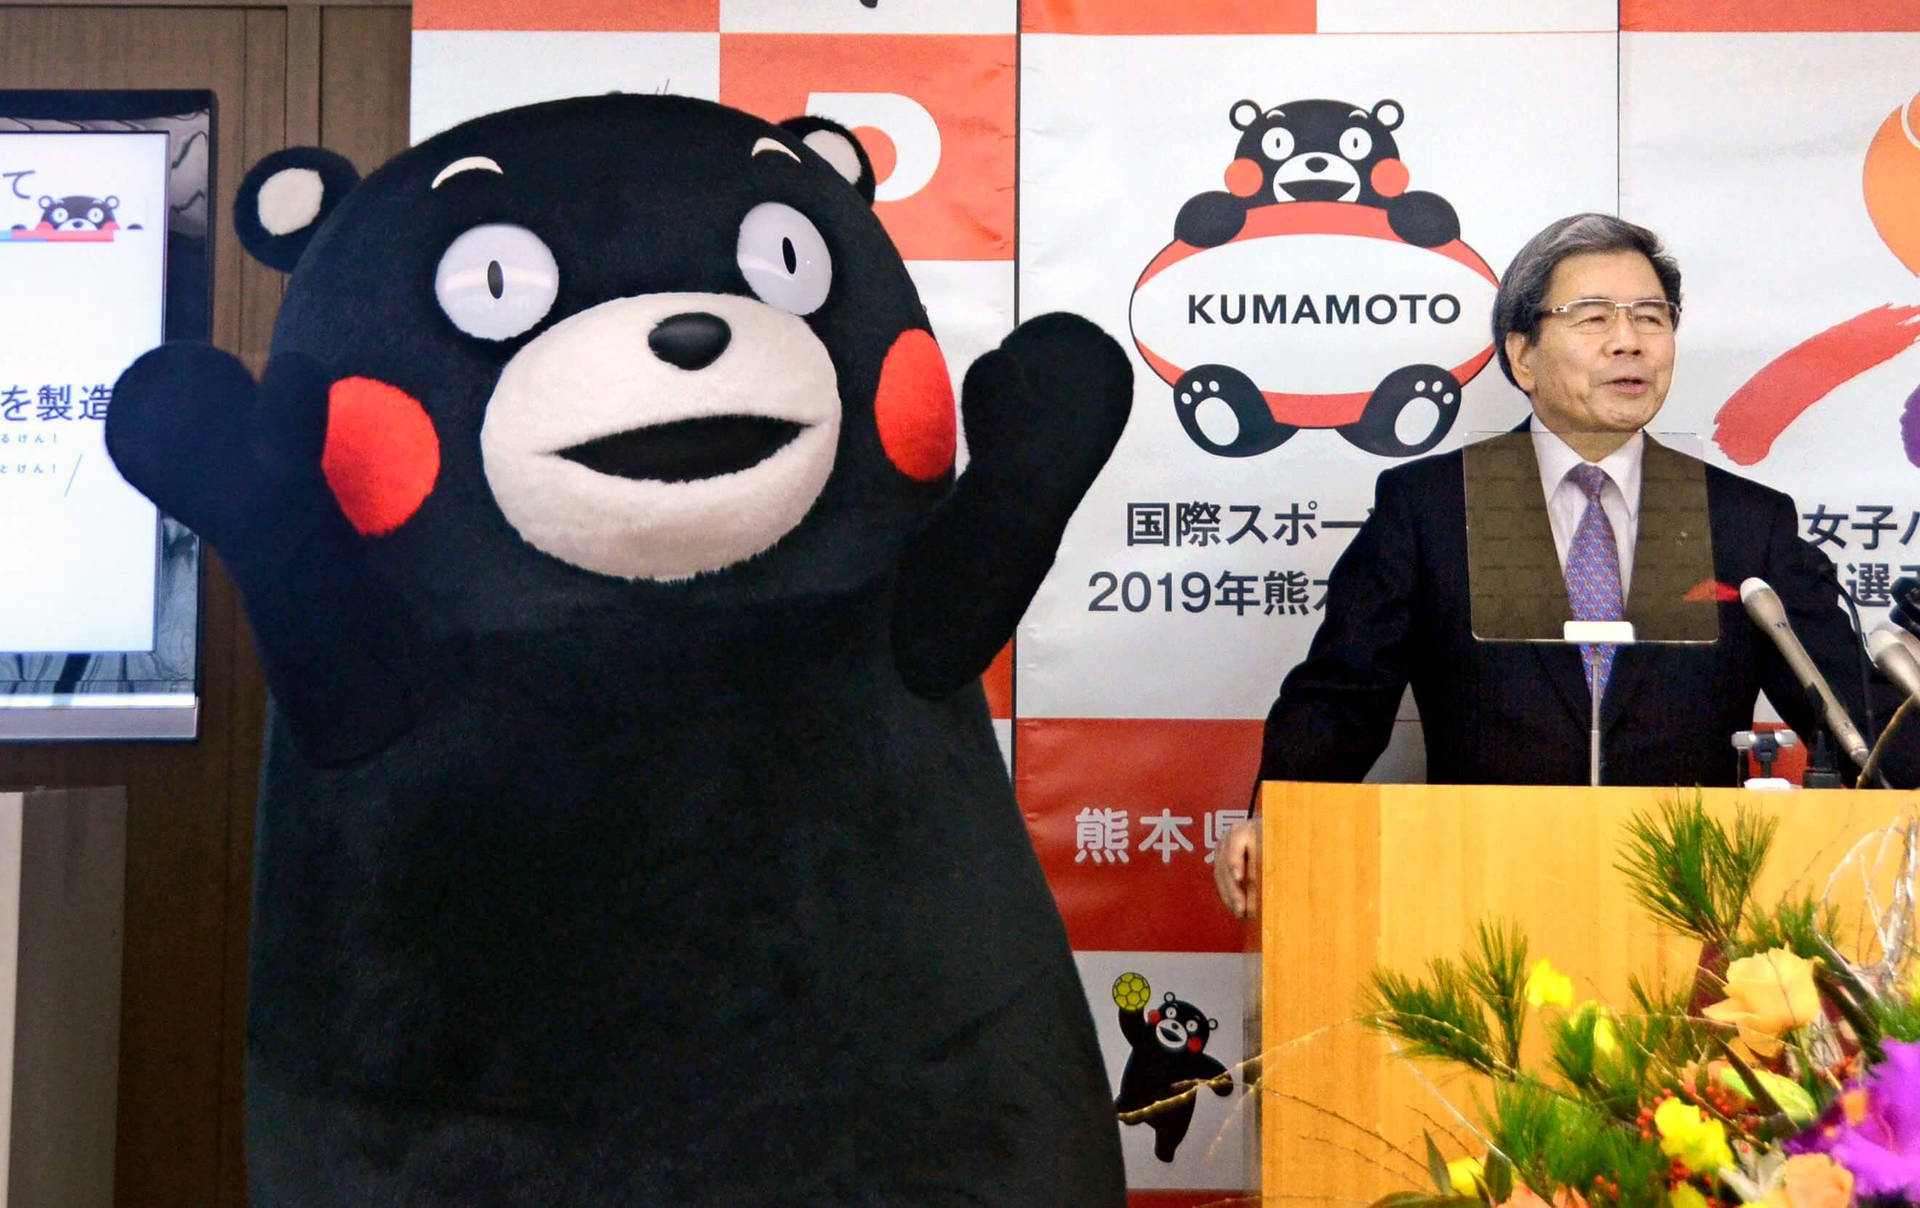 Kumamon With Kumamoto Governor Background